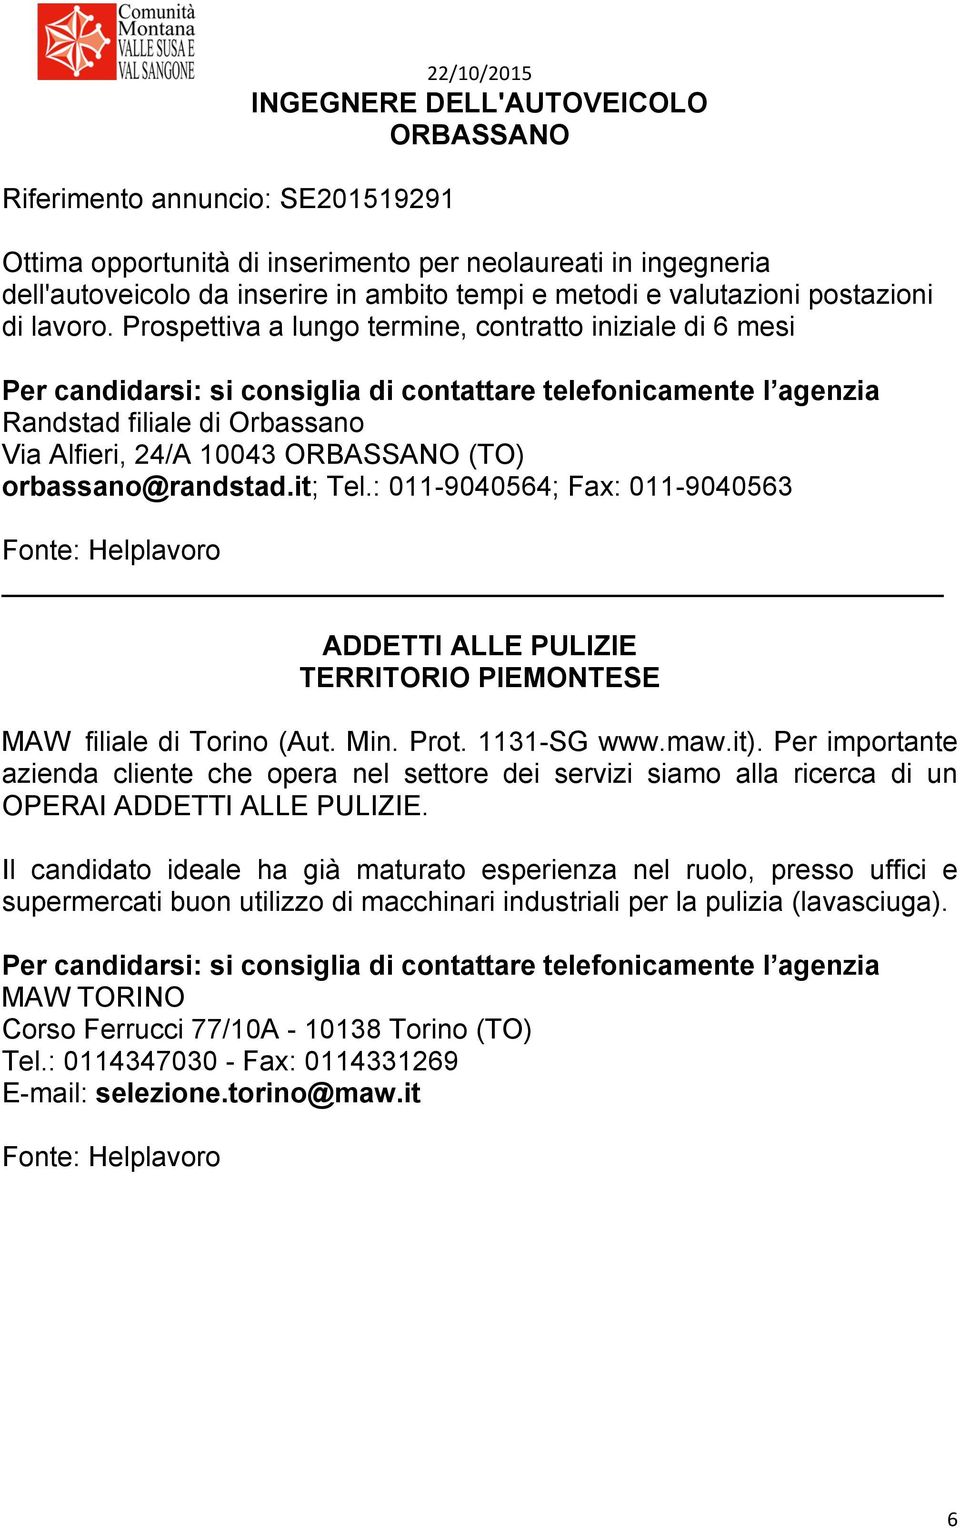 : 011-9040564; Fax: 011-9040563 Fonte: Helplavoro ADDETTI ALLE PULIZIE TERRITORIO PIEMONTESE MAW filiale di Torino (Aut. Min. Prot. 1131-SG www.maw.it).